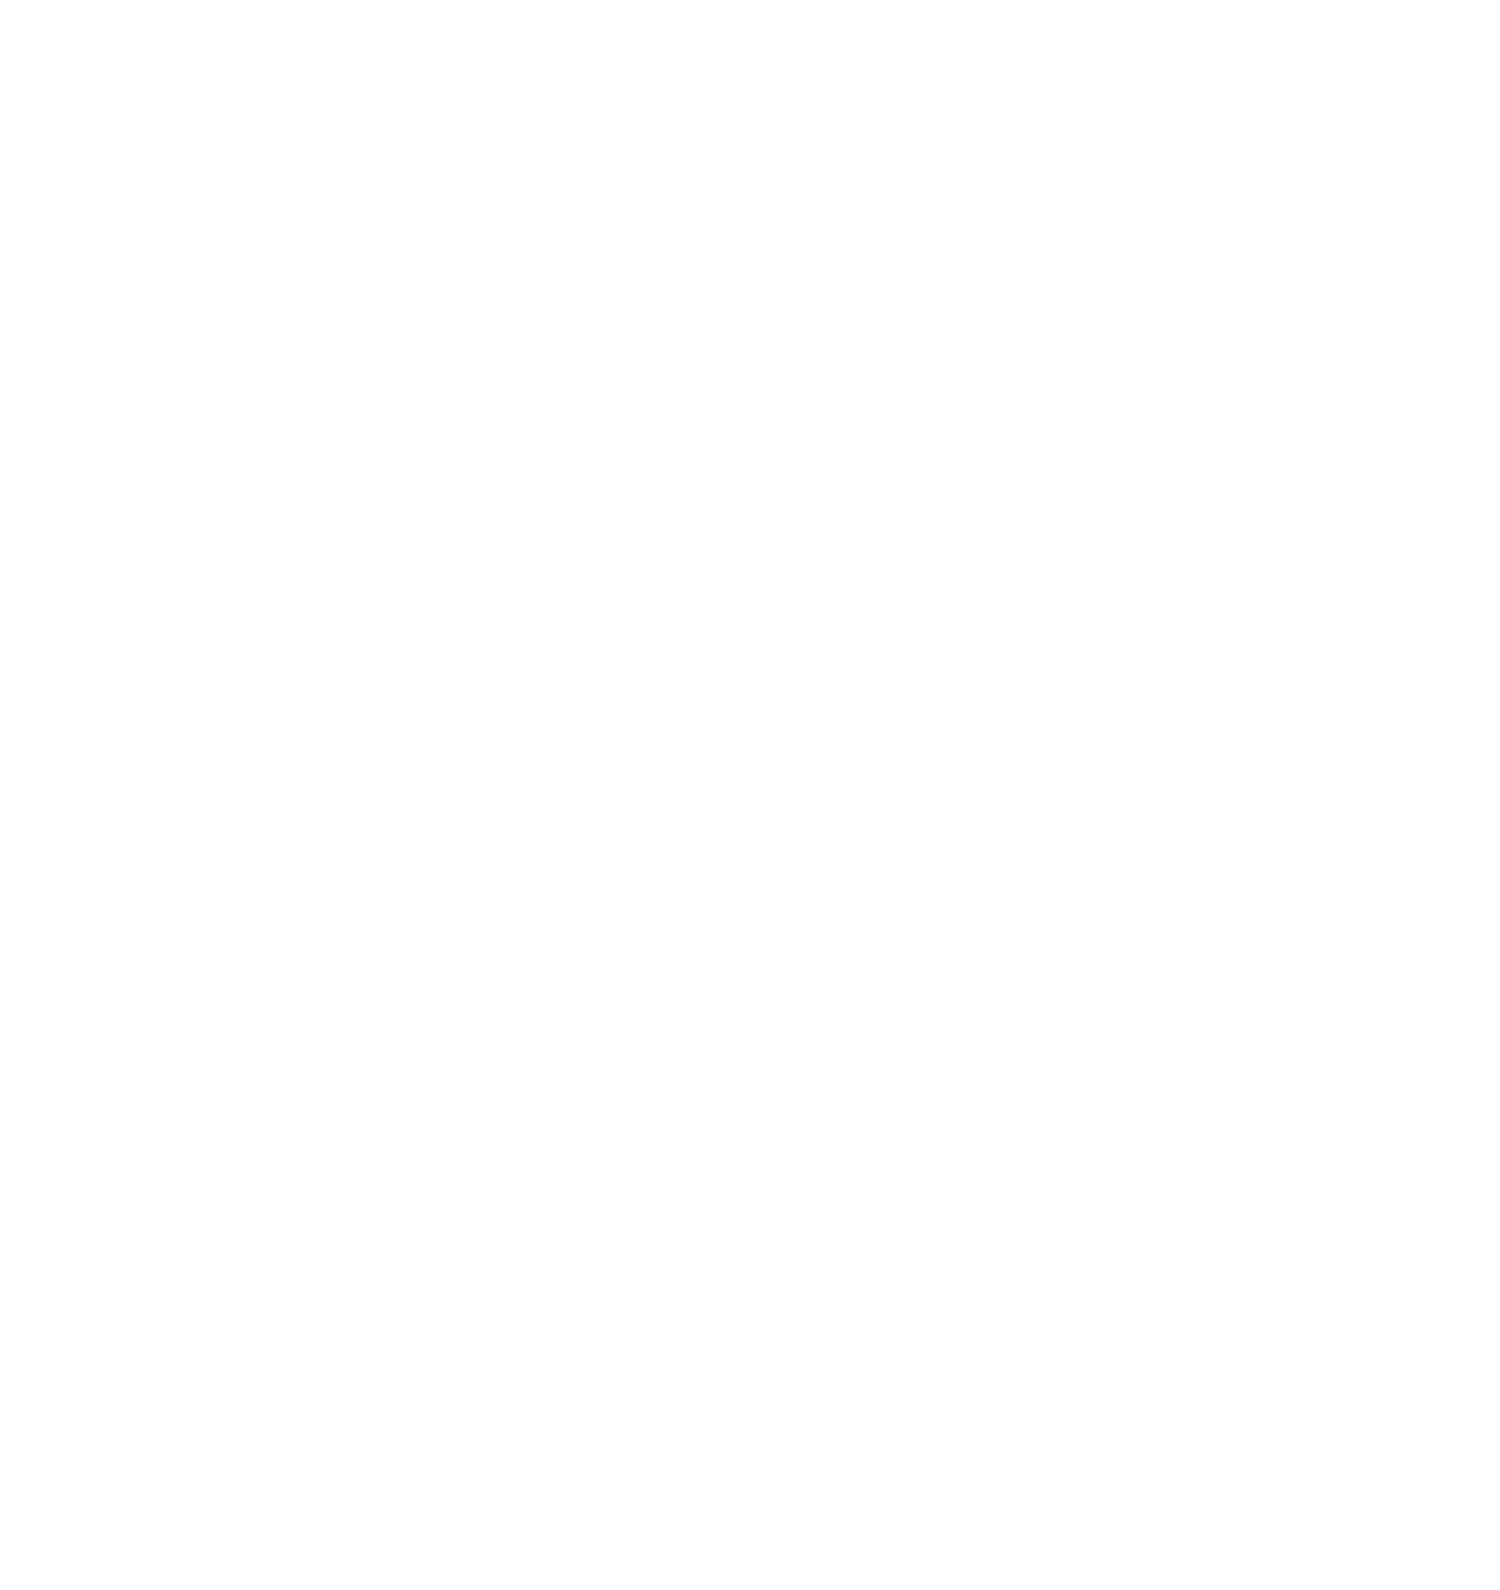 Conexion Uterina